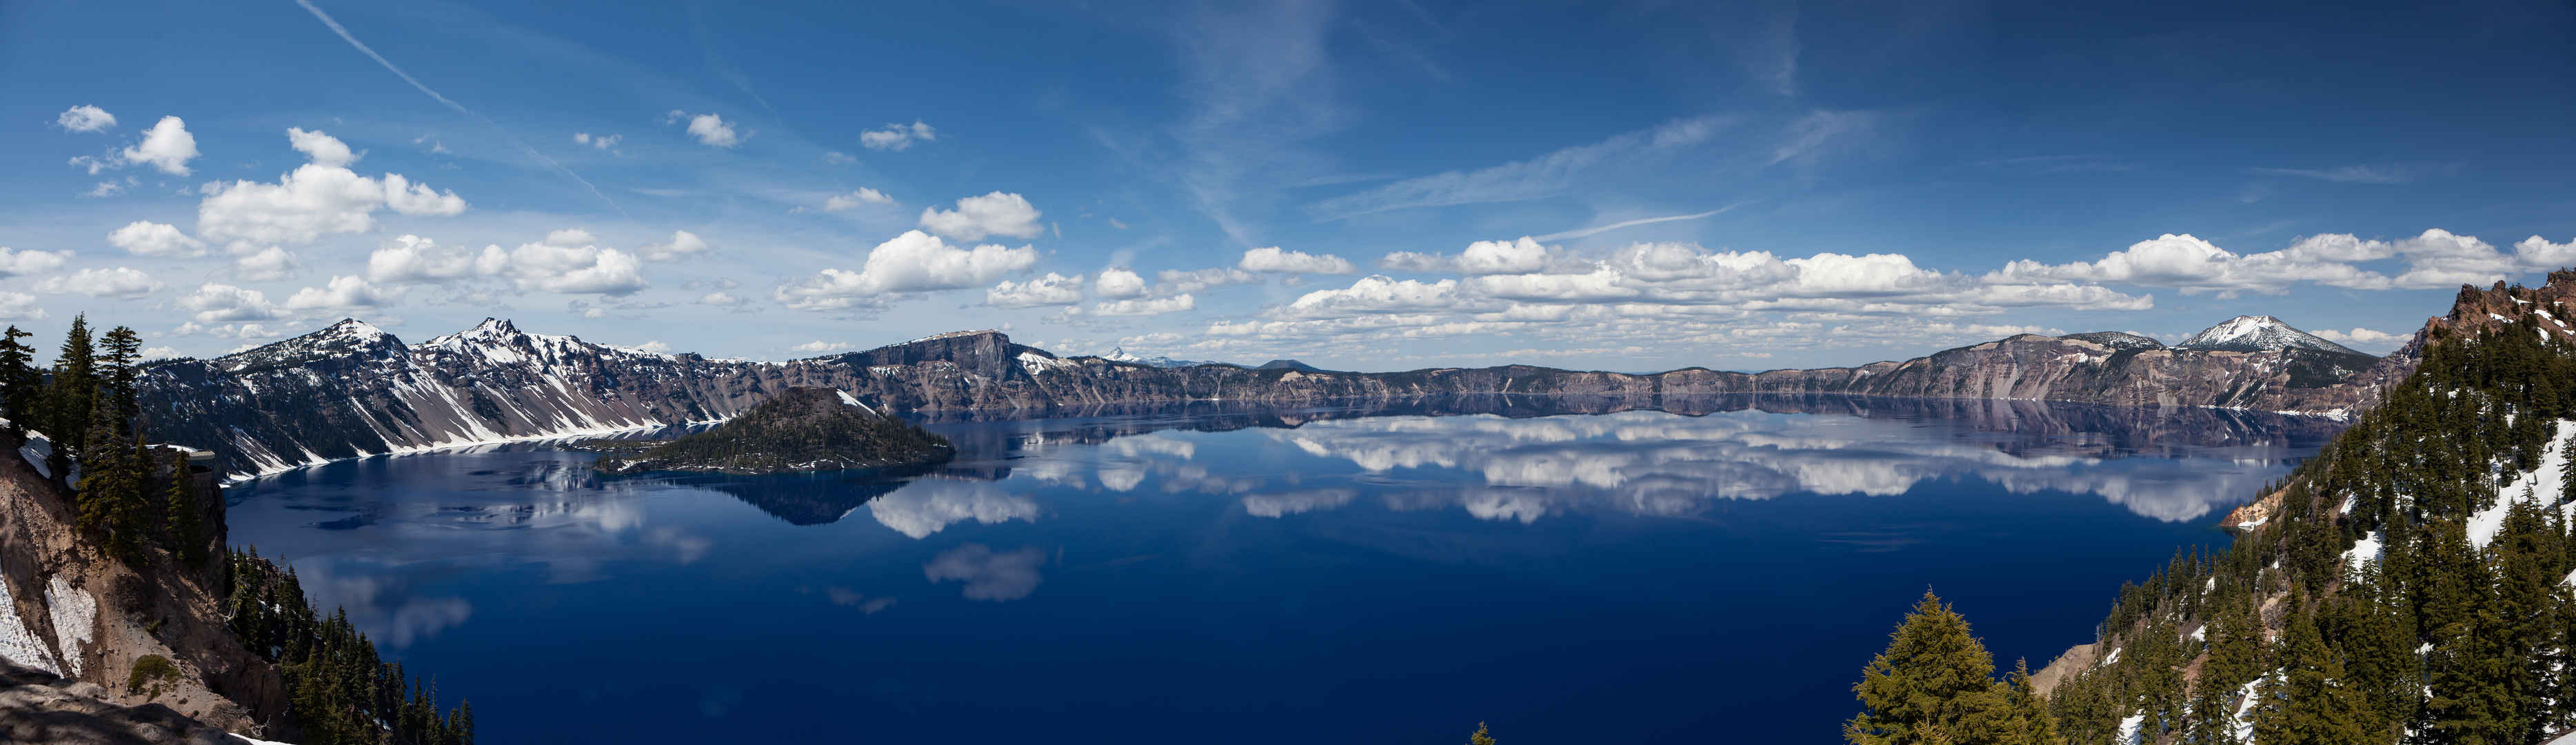 雪山湖泊超清图片